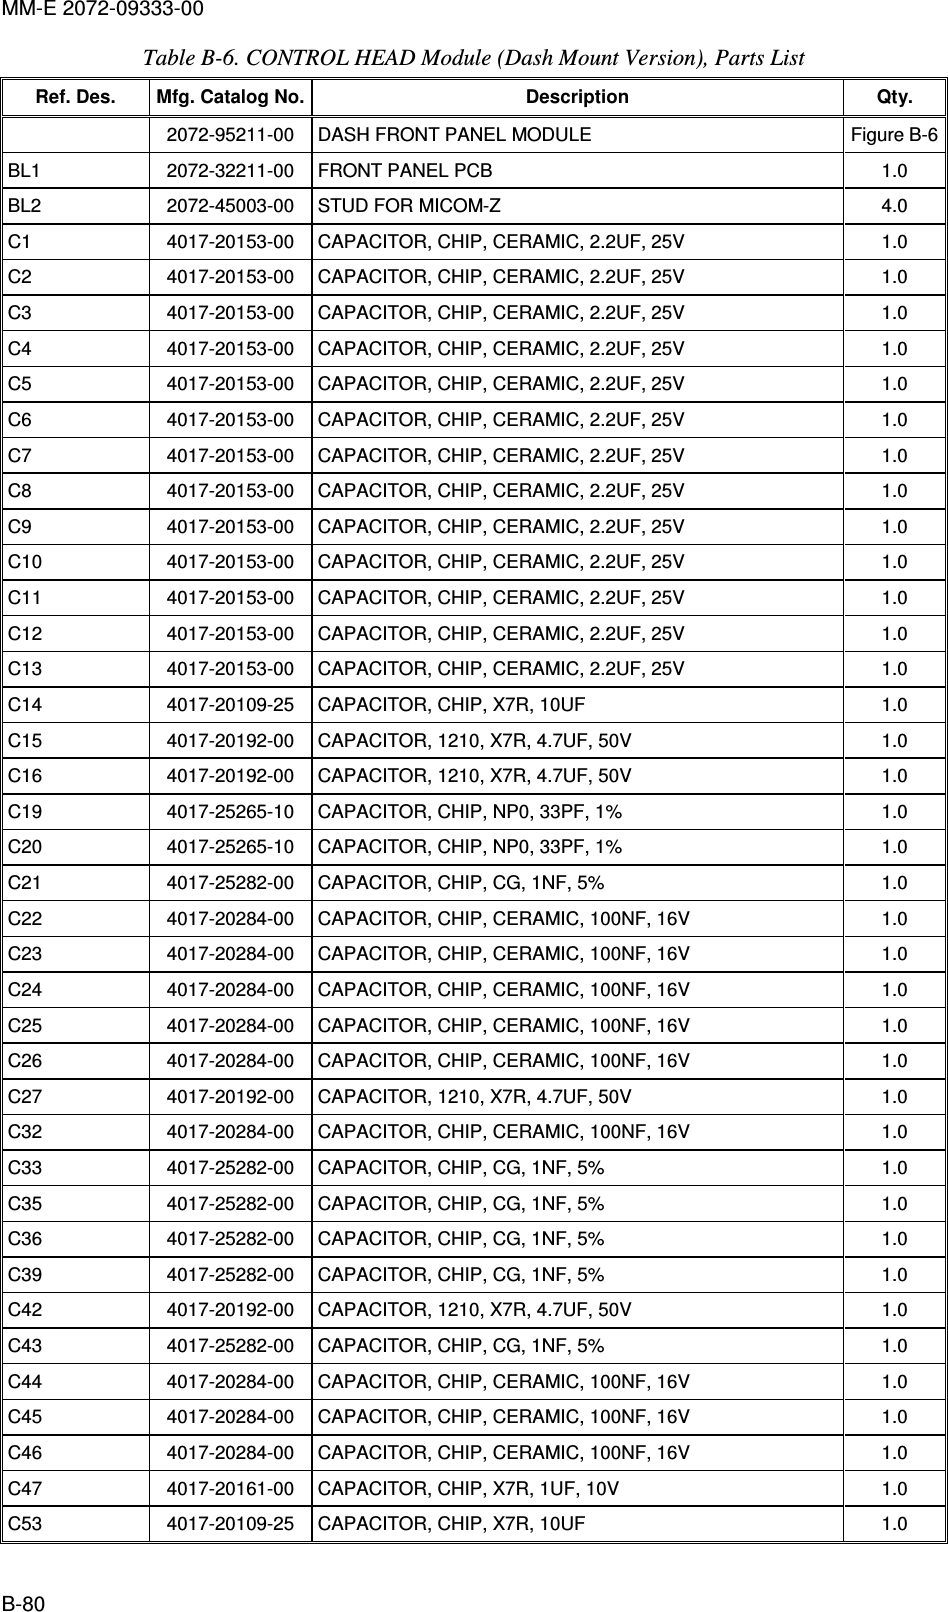 MM-E 2072-09333-00 B-80 Table  B-6. CONTROL HEAD Module (Dash Mount Version), Parts List Ref. Des.  Mfg. Catalog No. Description  Qty.   2072-95211-00  DASH FRONT PANEL MODULE   Figure  B-6 BL1   2072-32211-00   FRONT PANEL PCB   1.0  BL2   2072-45003-00   STUD FOR MICOM-Z  4.0  C1   4017-20153-00   CAPACITOR, CHIP, CERAMIC, 2.2UF, 25V  1.0  C2   4017-20153-00   CAPACITOR, CHIP, CERAMIC, 2.2UF, 25V  1.0  C3   4017-20153-00   CAPACITOR, CHIP, CERAMIC, 2.2UF, 25V  1.0  C4   4017-20153-00   CAPACITOR, CHIP, CERAMIC, 2.2UF, 25V  1.0  C5   4017-20153-00   CAPACITOR, CHIP, CERAMIC, 2.2UF, 25V  1.0  C6   4017-20153-00   CAPACITOR, CHIP, CERAMIC, 2.2UF, 25V  1.0  C7   4017-20153-00   CAPACITOR, CHIP, CERAMIC, 2.2UF, 25V  1.0  C8   4017-20153-00   CAPACITOR, CHIP, CERAMIC, 2.2UF, 25V  1.0  C9   4017-20153-00   CAPACITOR, CHIP, CERAMIC, 2.2UF, 25V  1.0  C10   4017-20153-00   CAPACITOR, CHIP, CERAMIC, 2.2UF, 25V  1.0  C11   4017-20153-00   CAPACITOR, CHIP, CERAMIC, 2.2UF, 25V  1.0  C12   4017-20153-00   CAPACITOR, CHIP, CERAMIC, 2.2UF, 25V  1.0  C13   4017-20153-00   CAPACITOR, CHIP, CERAMIC, 2.2UF, 25V  1.0  C14   4017-20109-25   CAPACITOR, CHIP, X7R, 10UF  1.0  C15   4017-20192-00   CAPACITOR, 1210, X7R, 4.7UF, 50V  1.0  C16   4017-20192-00   CAPACITOR, 1210, X7R, 4.7UF, 50V  1.0  C19   4017-25265-10   CAPACITOR, CHIP, NP0, 33PF, 1%  1.0  C20   4017-25265-10   CAPACITOR, CHIP, NP0, 33PF, 1%  1.0  C21   4017-25282-00   CAPACITOR, CHIP, CG, 1NF, 5%  1.0  C22   4017-20284-00   CAPACITOR, CHIP, CERAMIC, 100NF, 16V  1.0  C23   4017-20284-00   CAPACITOR, CHIP, CERAMIC, 100NF, 16V  1.0  C24   4017-20284-00   CAPACITOR, CHIP, CERAMIC, 100NF, 16V  1.0  C25   4017-20284-00   CAPACITOR, CHIP, CERAMIC, 100NF, 16V  1.0  C26   4017-20284-00   CAPACITOR, CHIP, CERAMIC, 100NF, 16V  1.0  C27   4017-20192-00   CAPACITOR, 1210, X7R, 4.7UF, 50V  1.0  C32   4017-20284-00   CAPACITOR, CHIP, CERAMIC, 100NF, 16V  1.0  C33   4017-25282-00   CAPACITOR, CHIP, CG, 1NF, 5%  1.0  C35   4017-25282-00   CAPACITOR, CHIP, CG, 1NF, 5%  1.0  C36   4017-25282-00   CAPACITOR, CHIP, CG, 1NF, 5%  1.0  C39   4017-25282-00   CAPACITOR, CHIP, CG, 1NF, 5%  1.0  C42   4017-20192-00   CAPACITOR, 1210, X7R, 4.7UF, 50V  1.0  C43   4017-25282-00   CAPACITOR, CHIP, CG, 1NF, 5%  1.0  C44   4017-20284-00   CAPACITOR, CHIP, CERAMIC, 100NF, 16V  1.0  C45   4017-20284-00   CAPACITOR, CHIP, CERAMIC, 100NF, 16V  1.0  C46   4017-20284-00   CAPACITOR, CHIP, CERAMIC, 100NF, 16V  1.0  C47   4017-20161-00   CAPACITOR, CHIP, X7R, 1UF, 10V  1.0  C53   4017-20109-25   CAPACITOR, CHIP, X7R, 10UF  1.0  